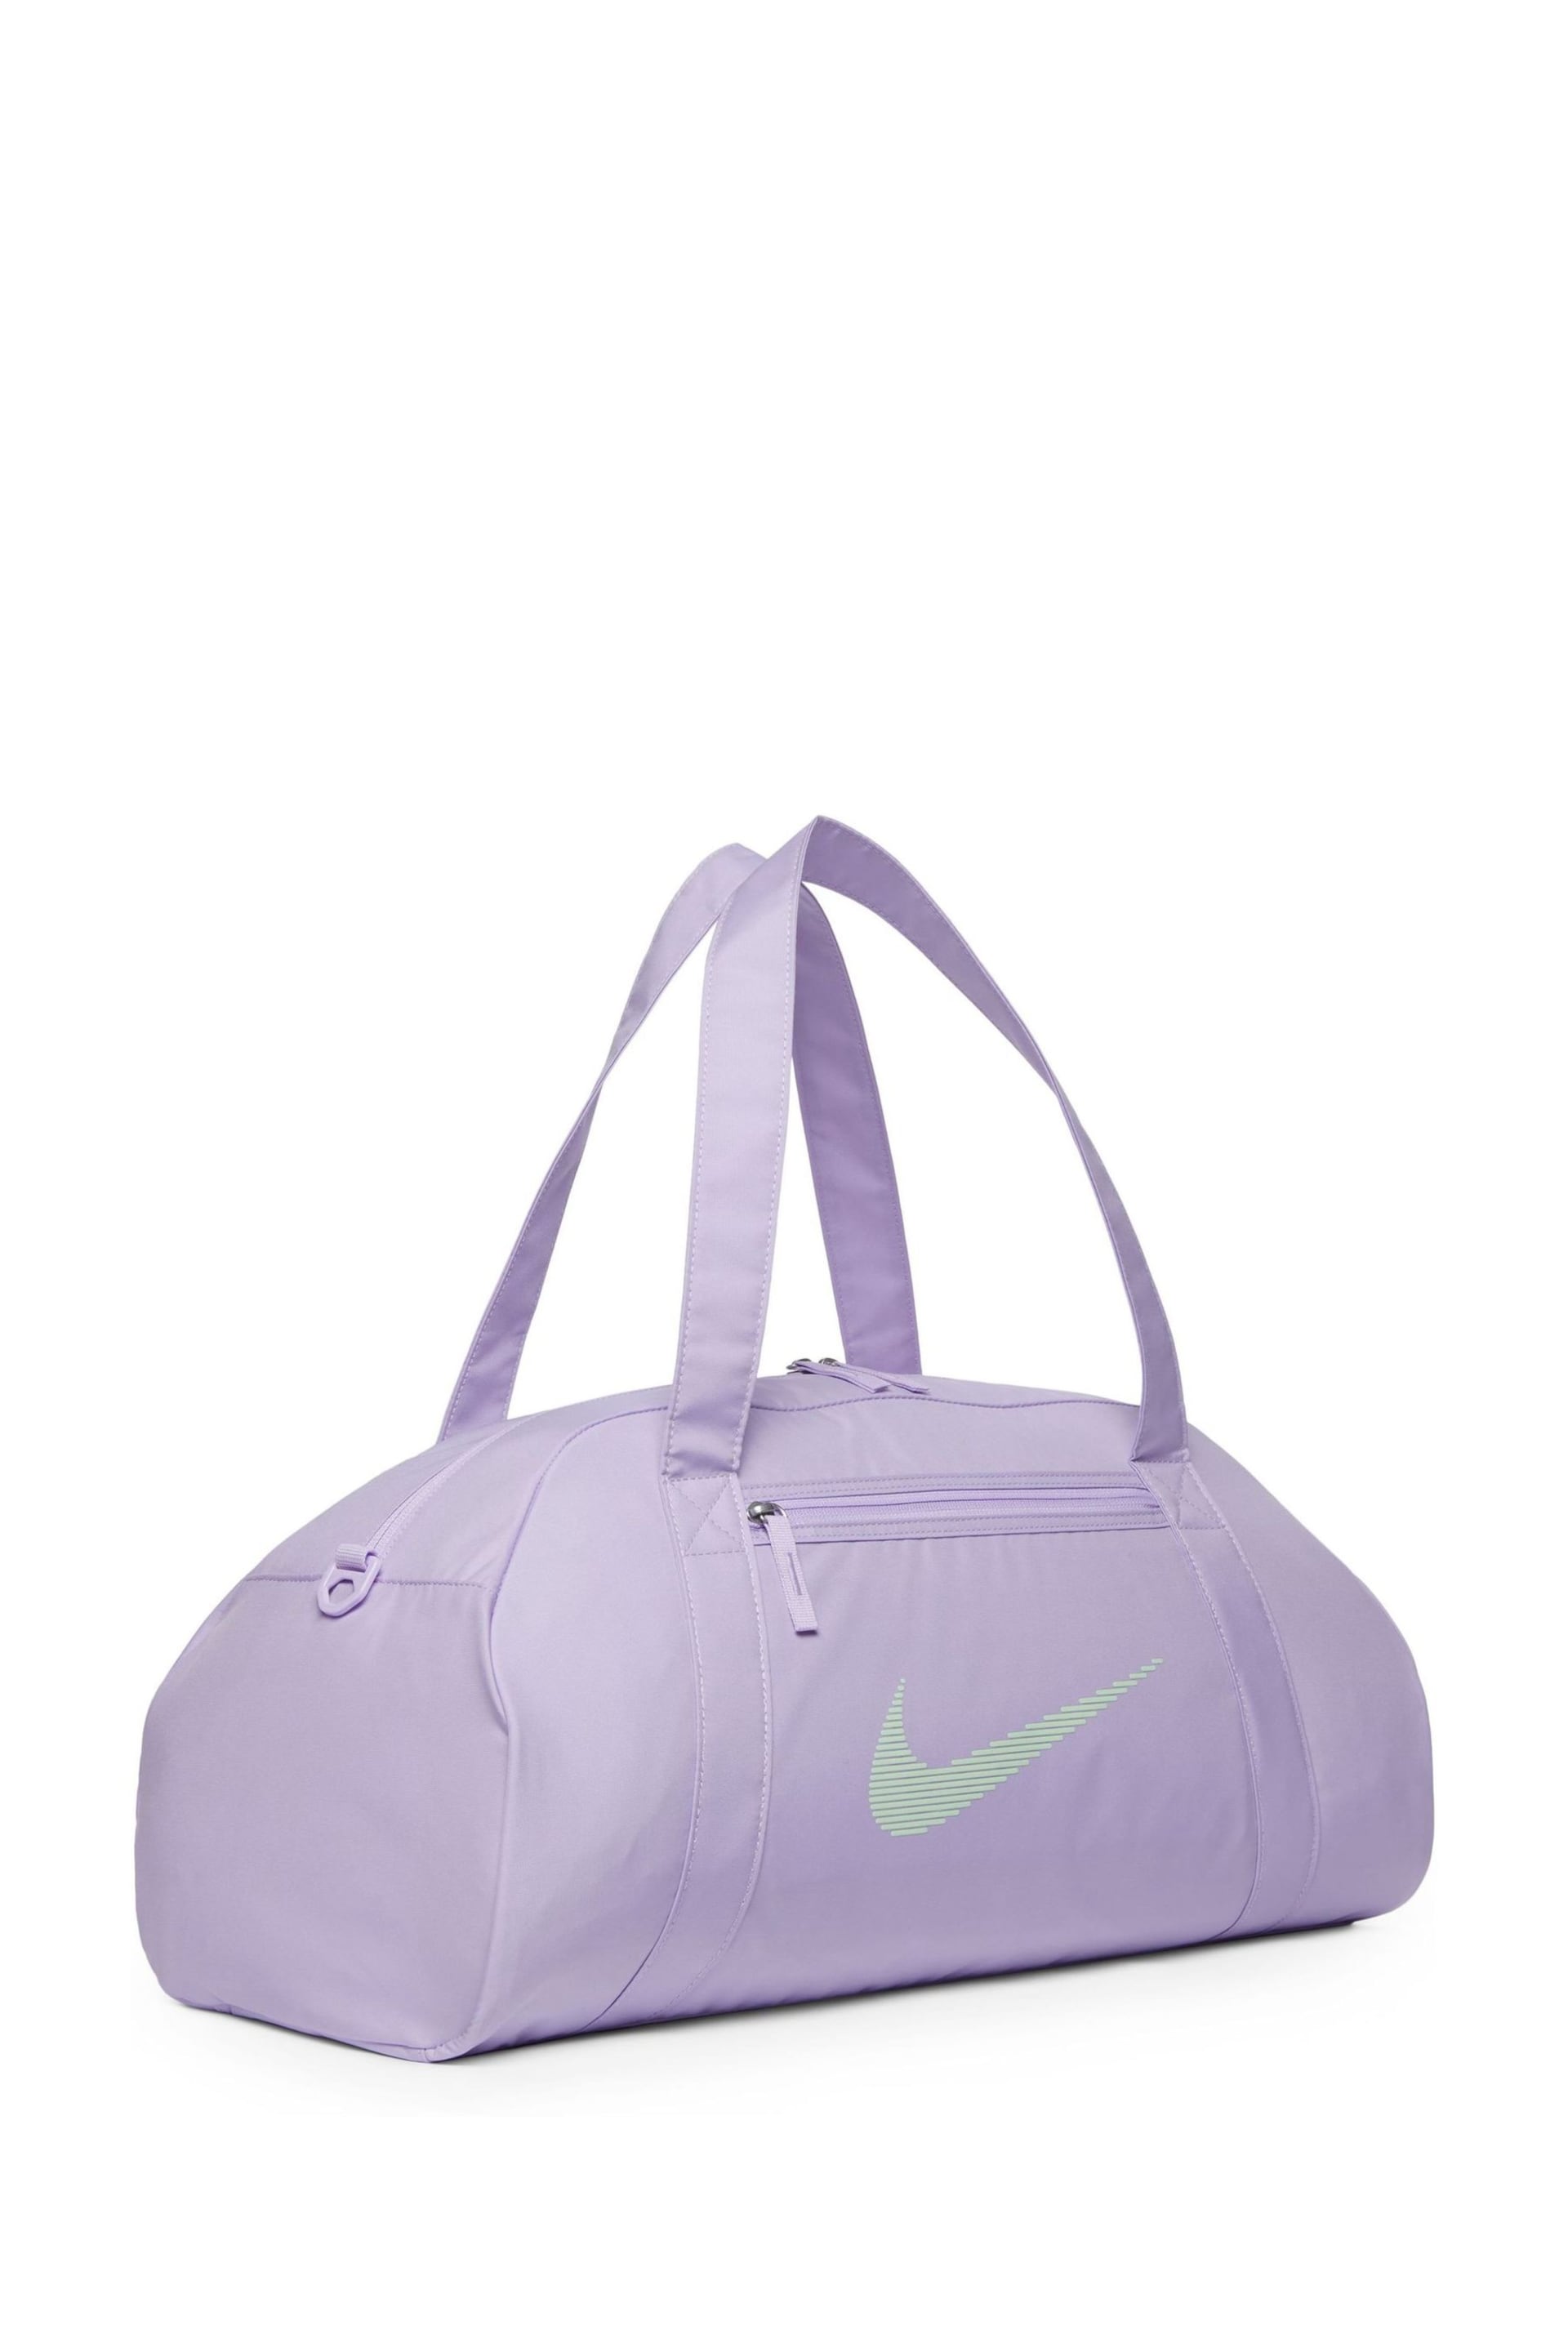 Nike Purple 24L Gym Club Duffel Bag - Image 5 of 11